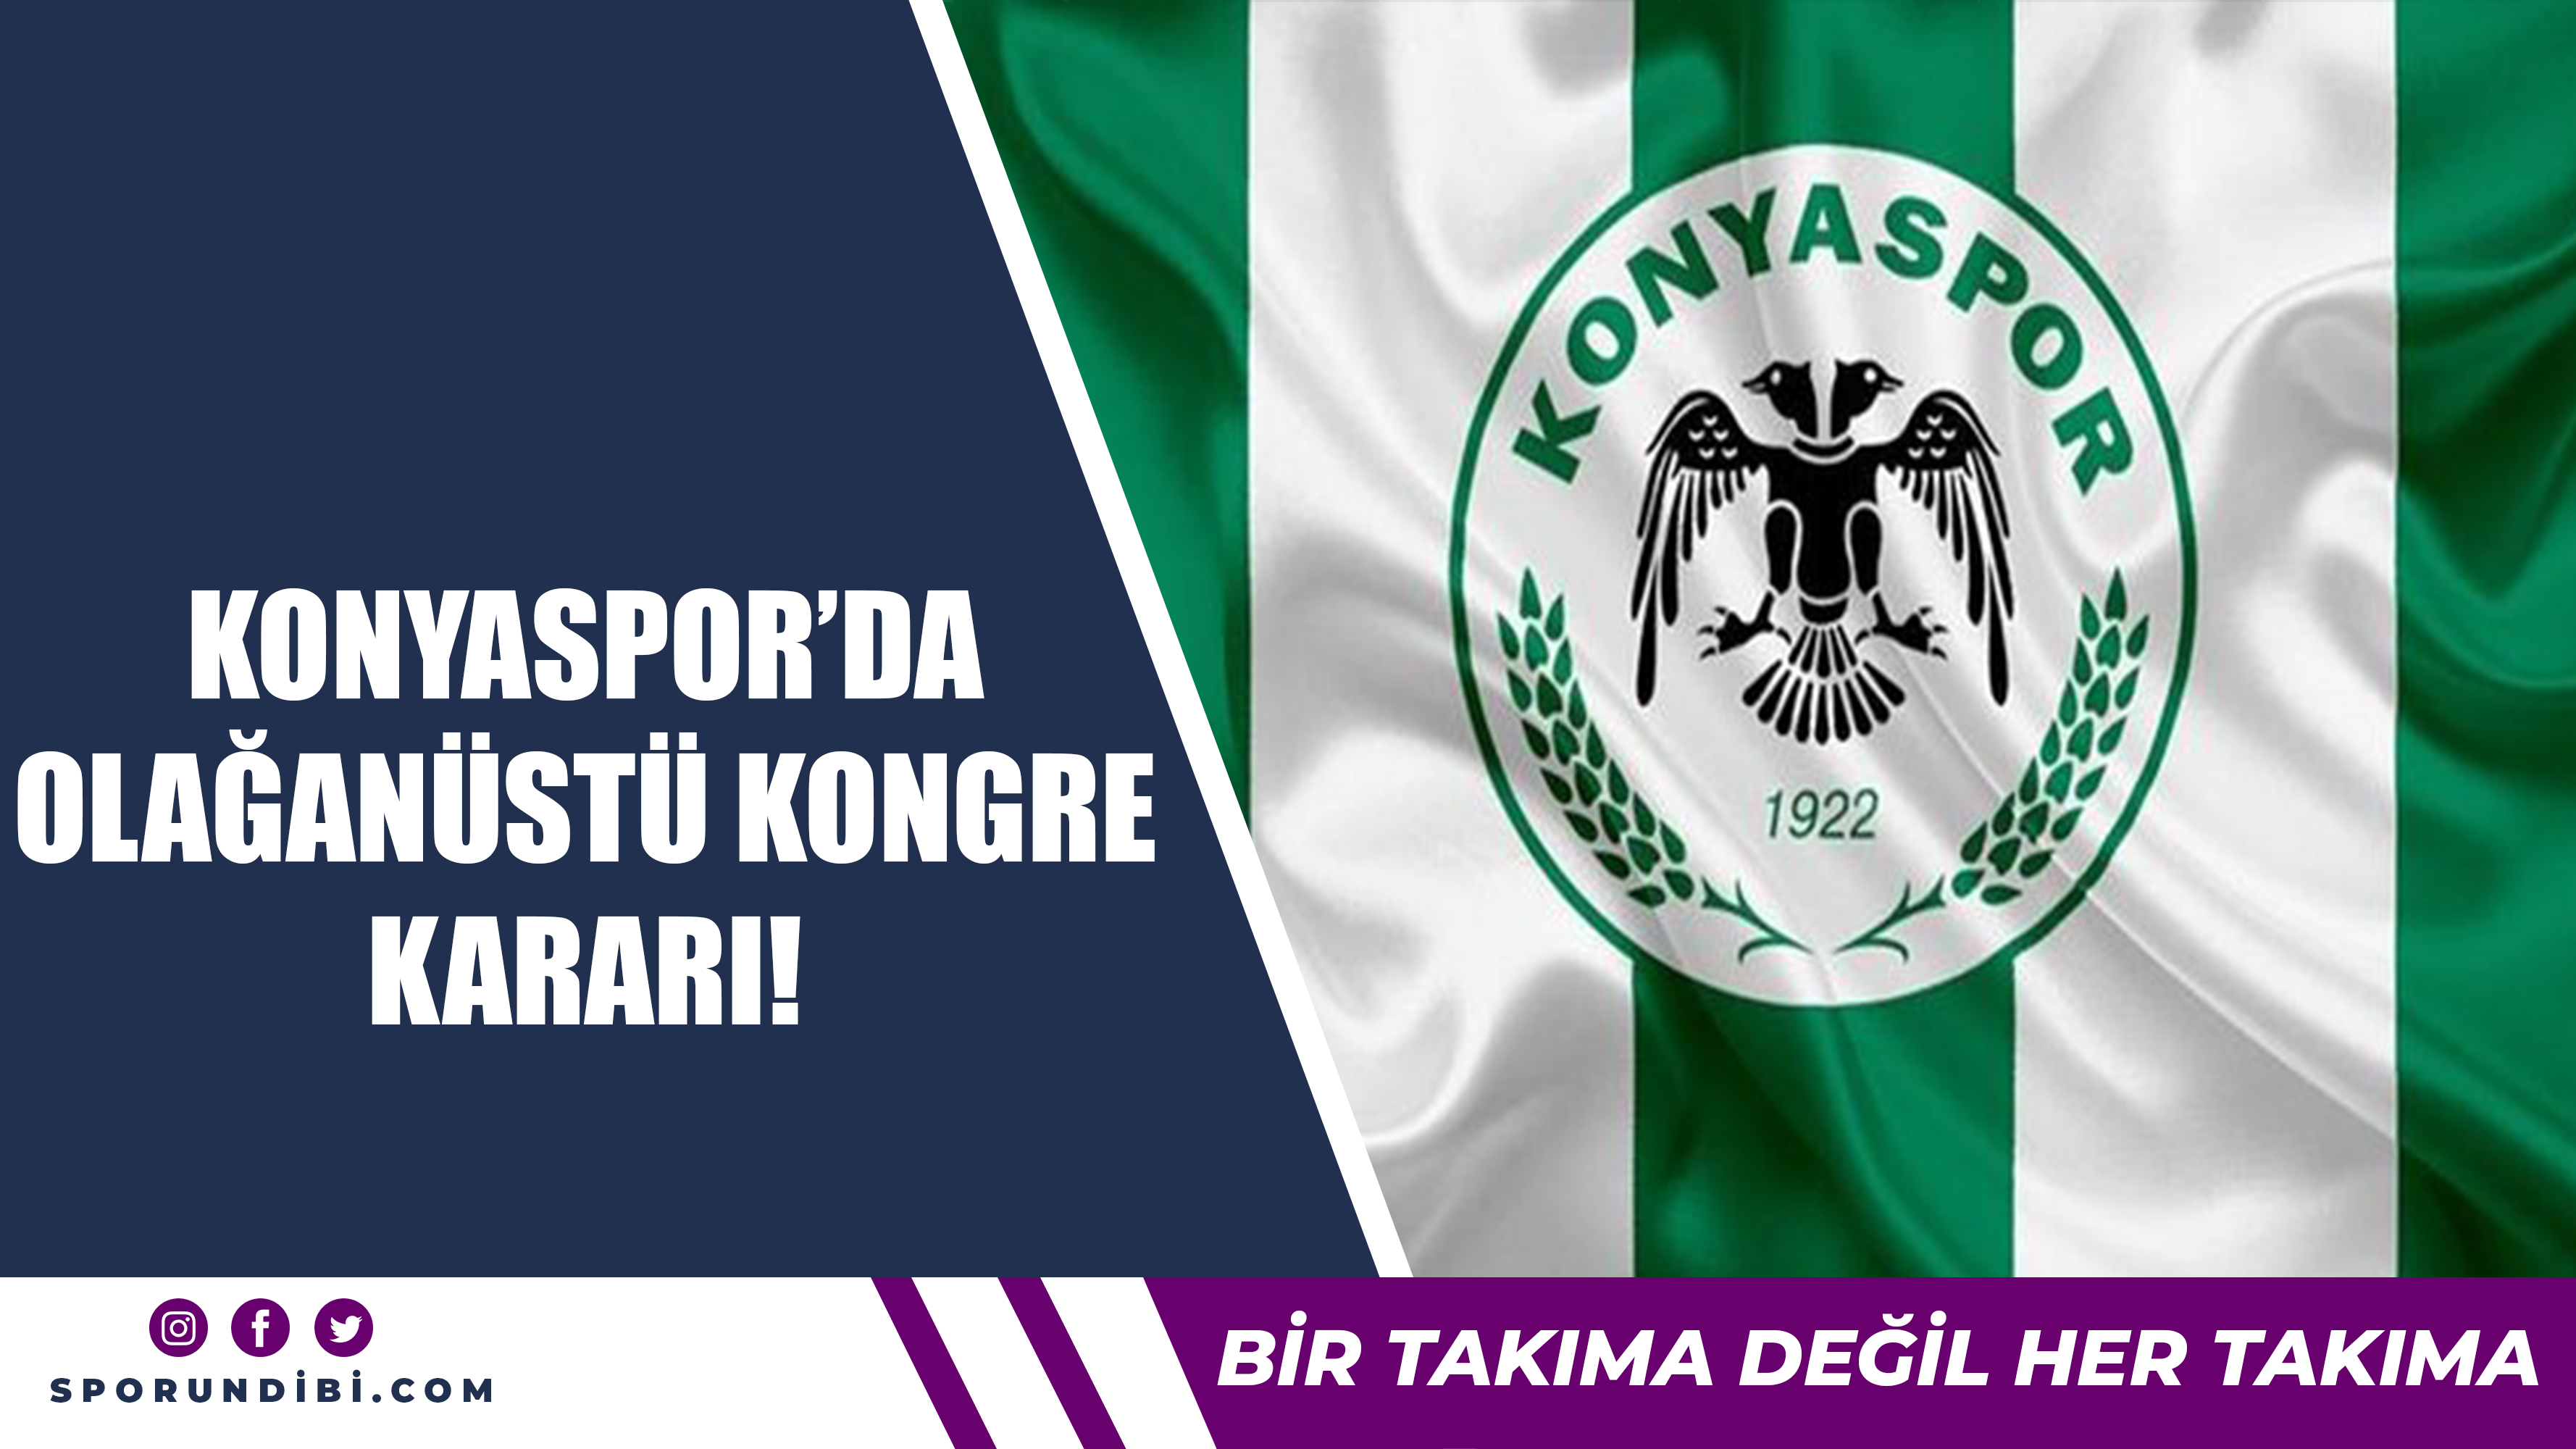 Konyaspor'da olağan üstü kongre kararı!